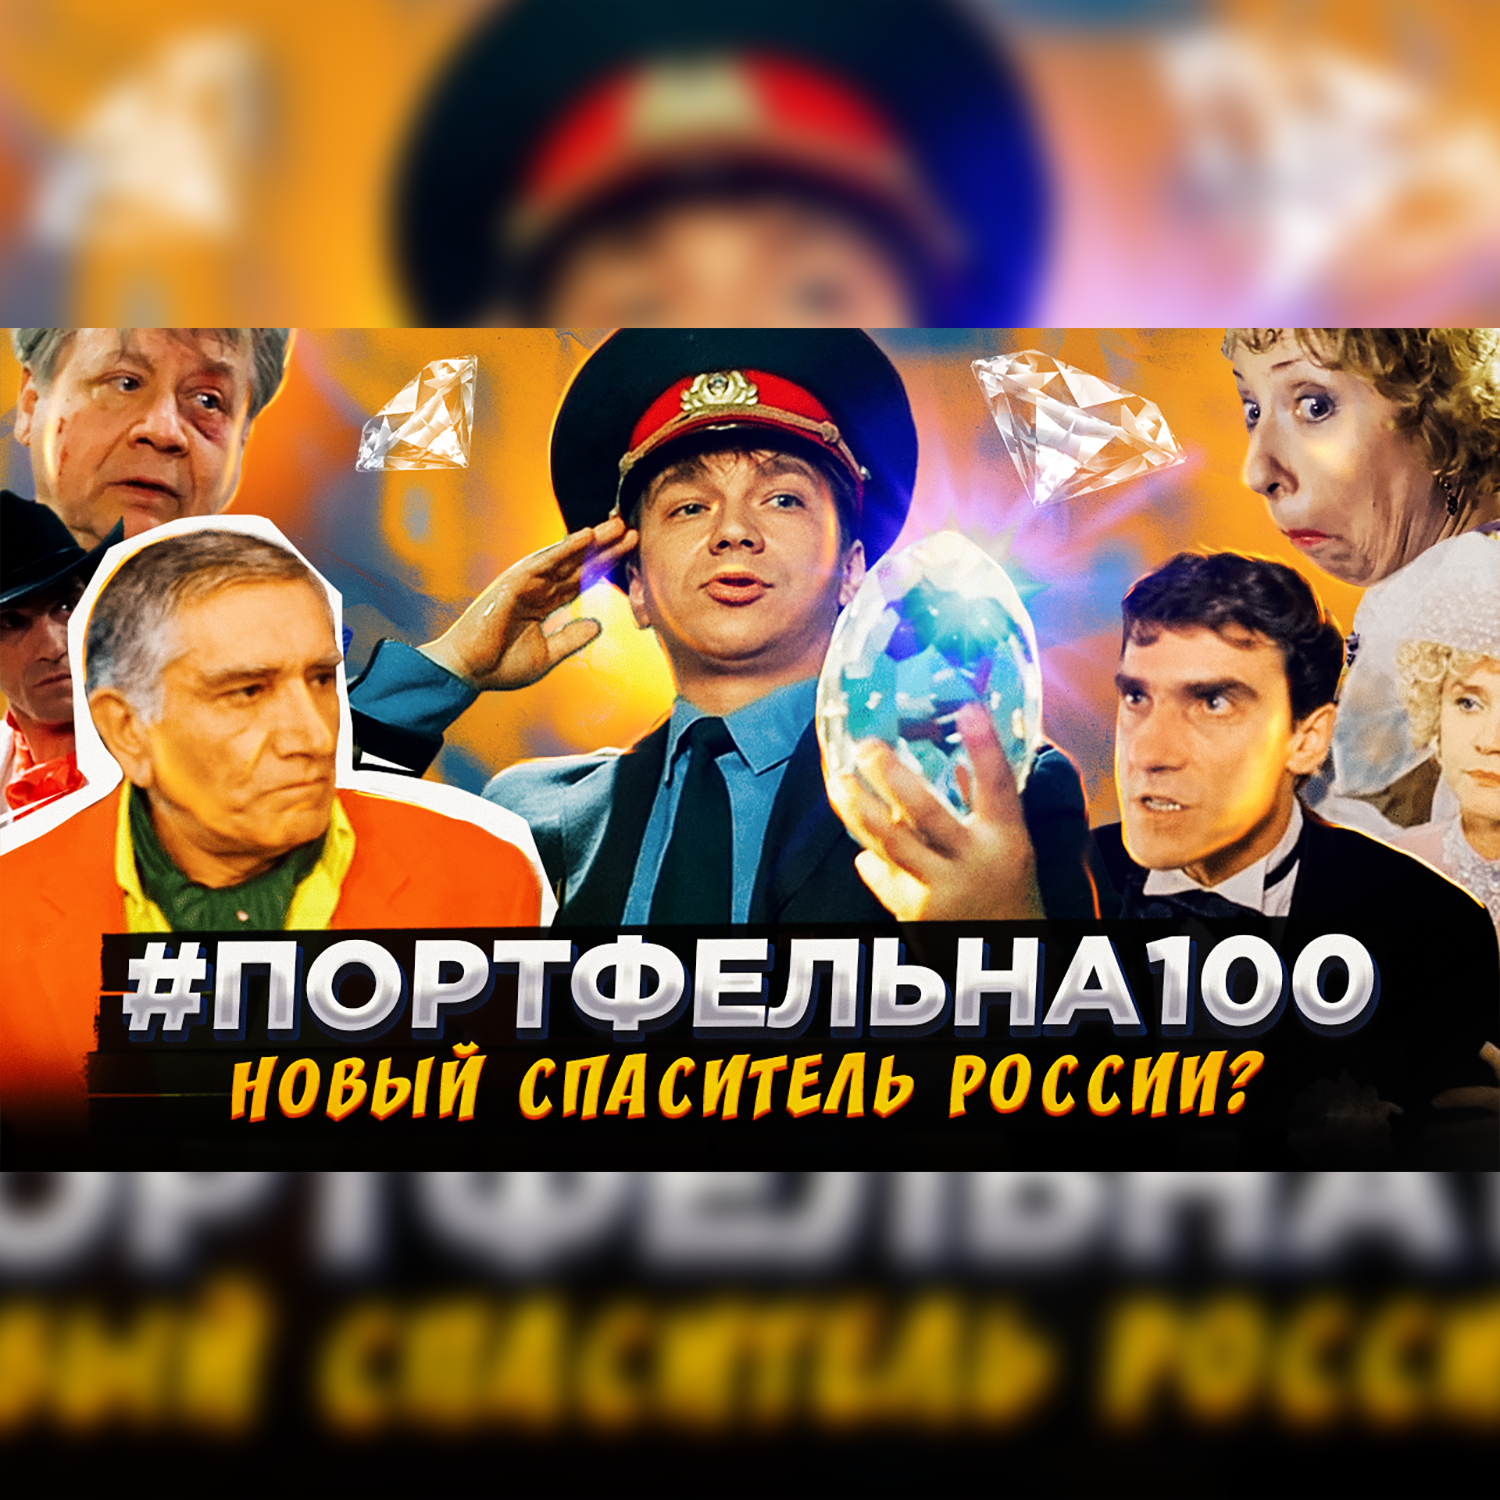 Новый спаситель России? #Портфельна100 podcast poster